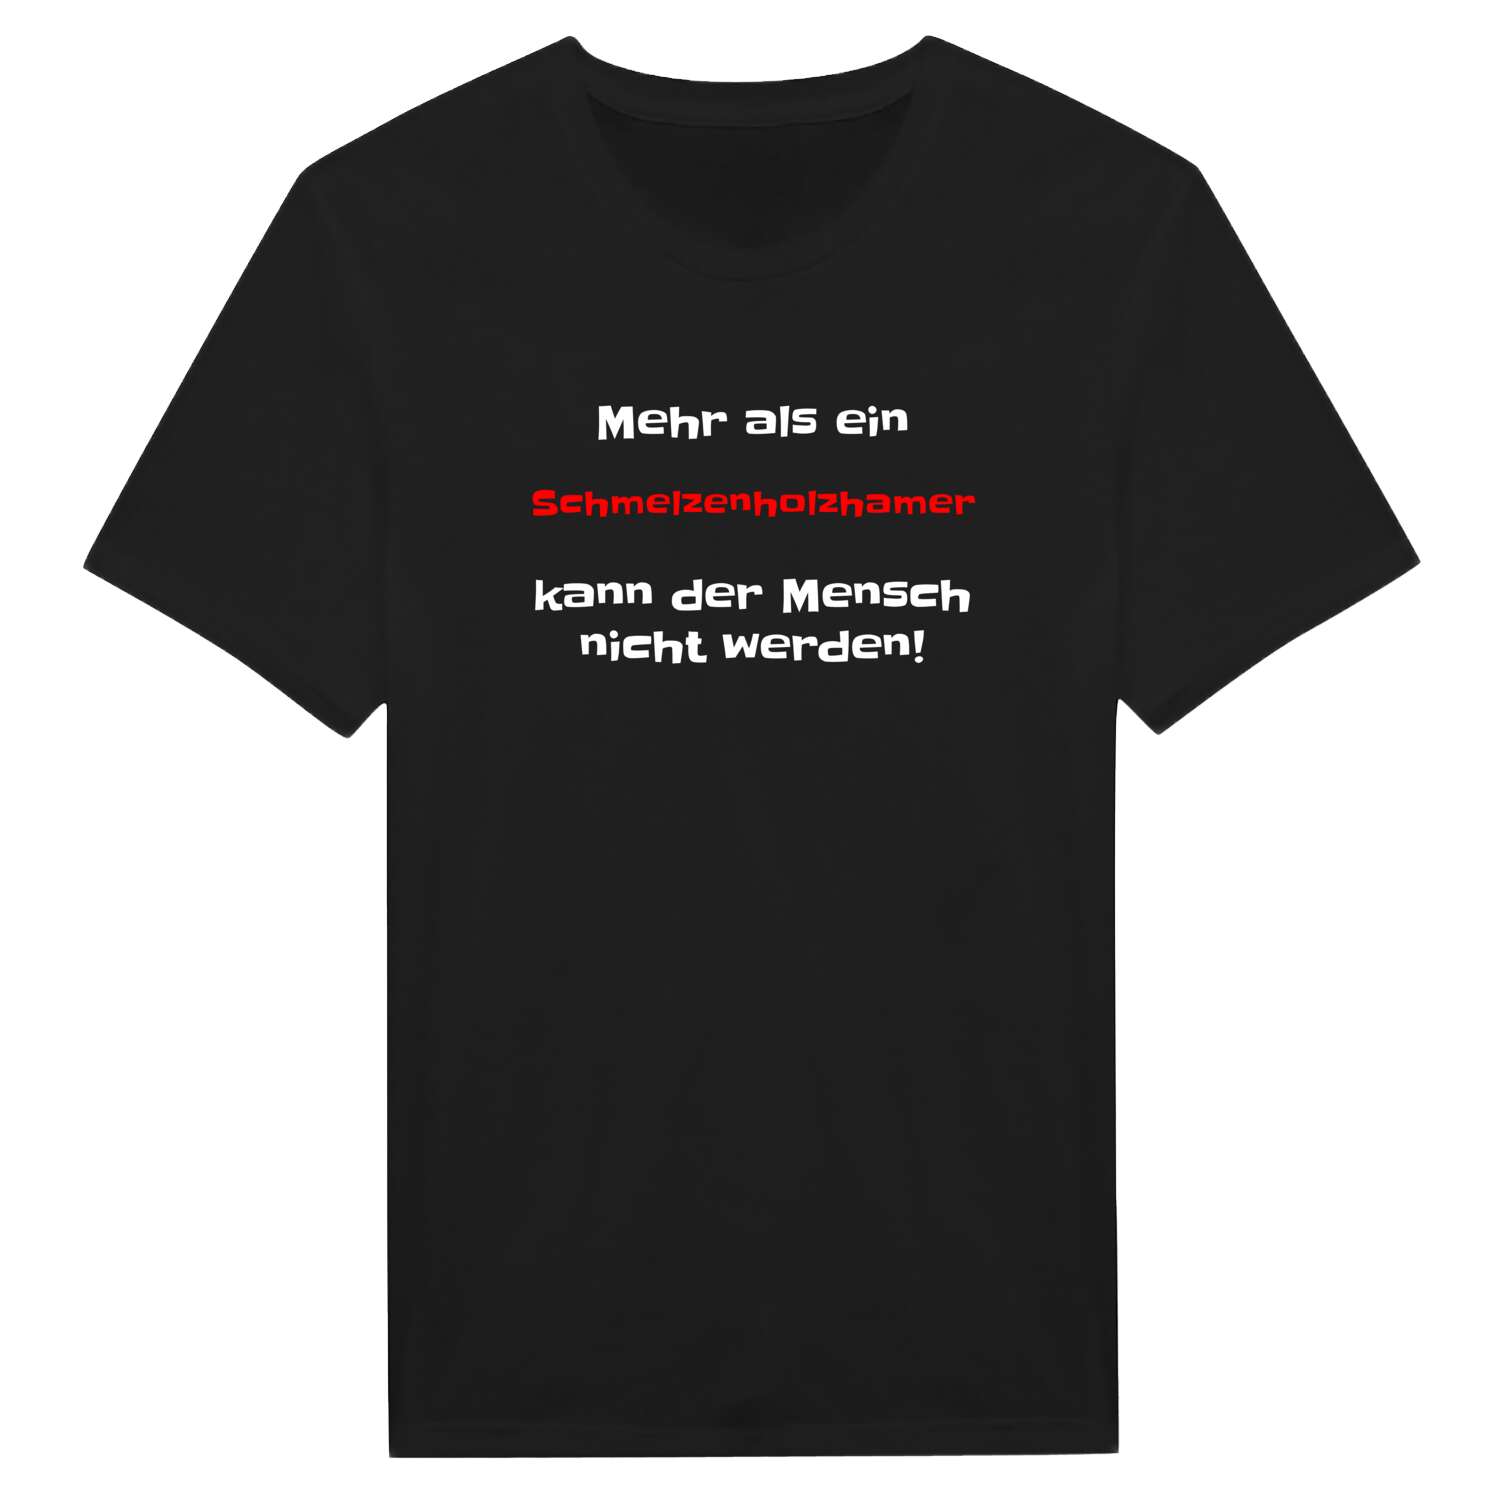 Schmelzenholzham T-Shirt »Mehr als ein«